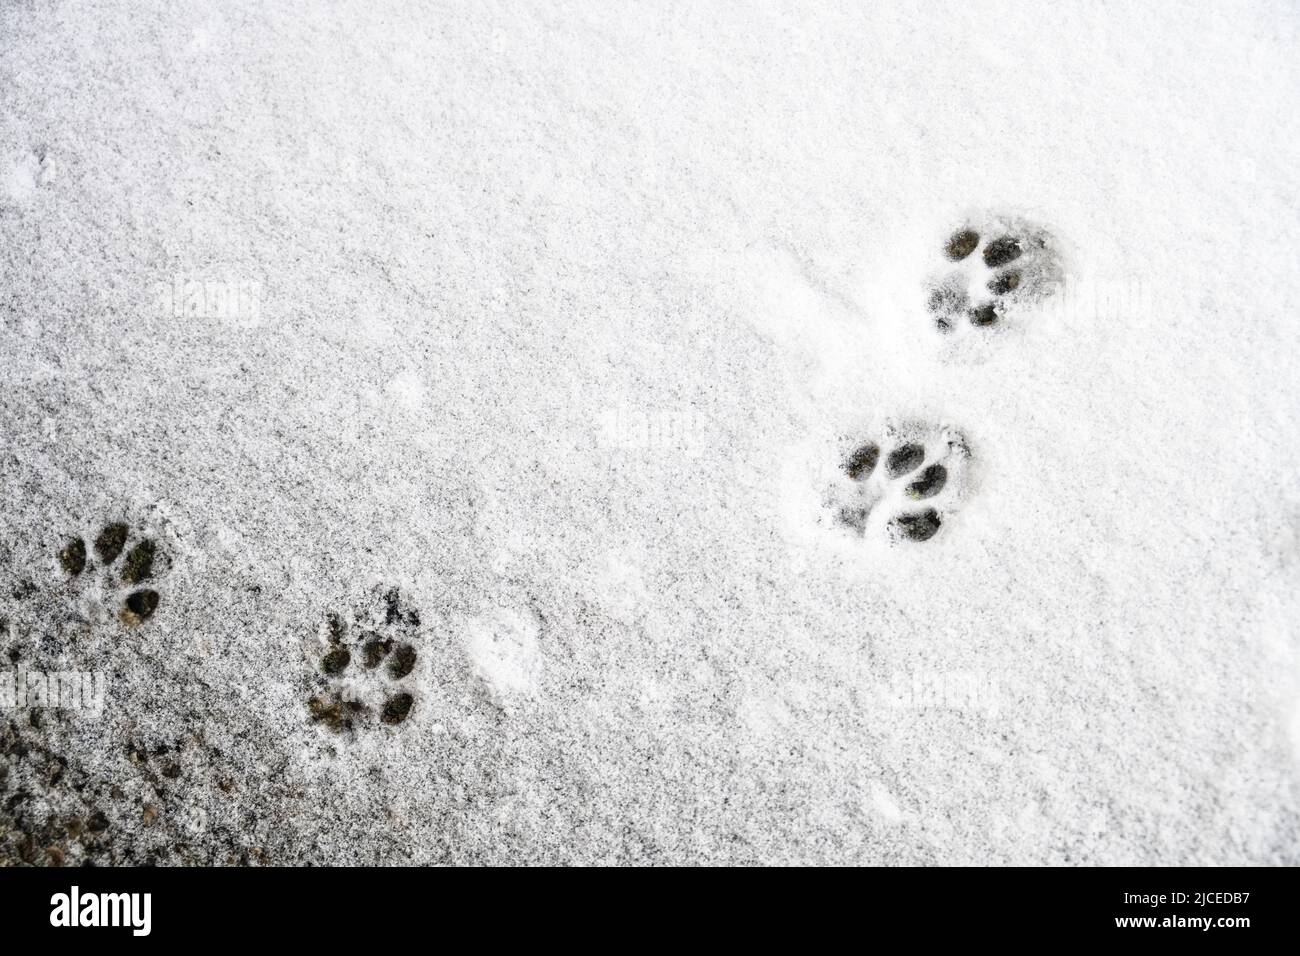 la patte de chat est imprimée dans la neige Banque D'Images